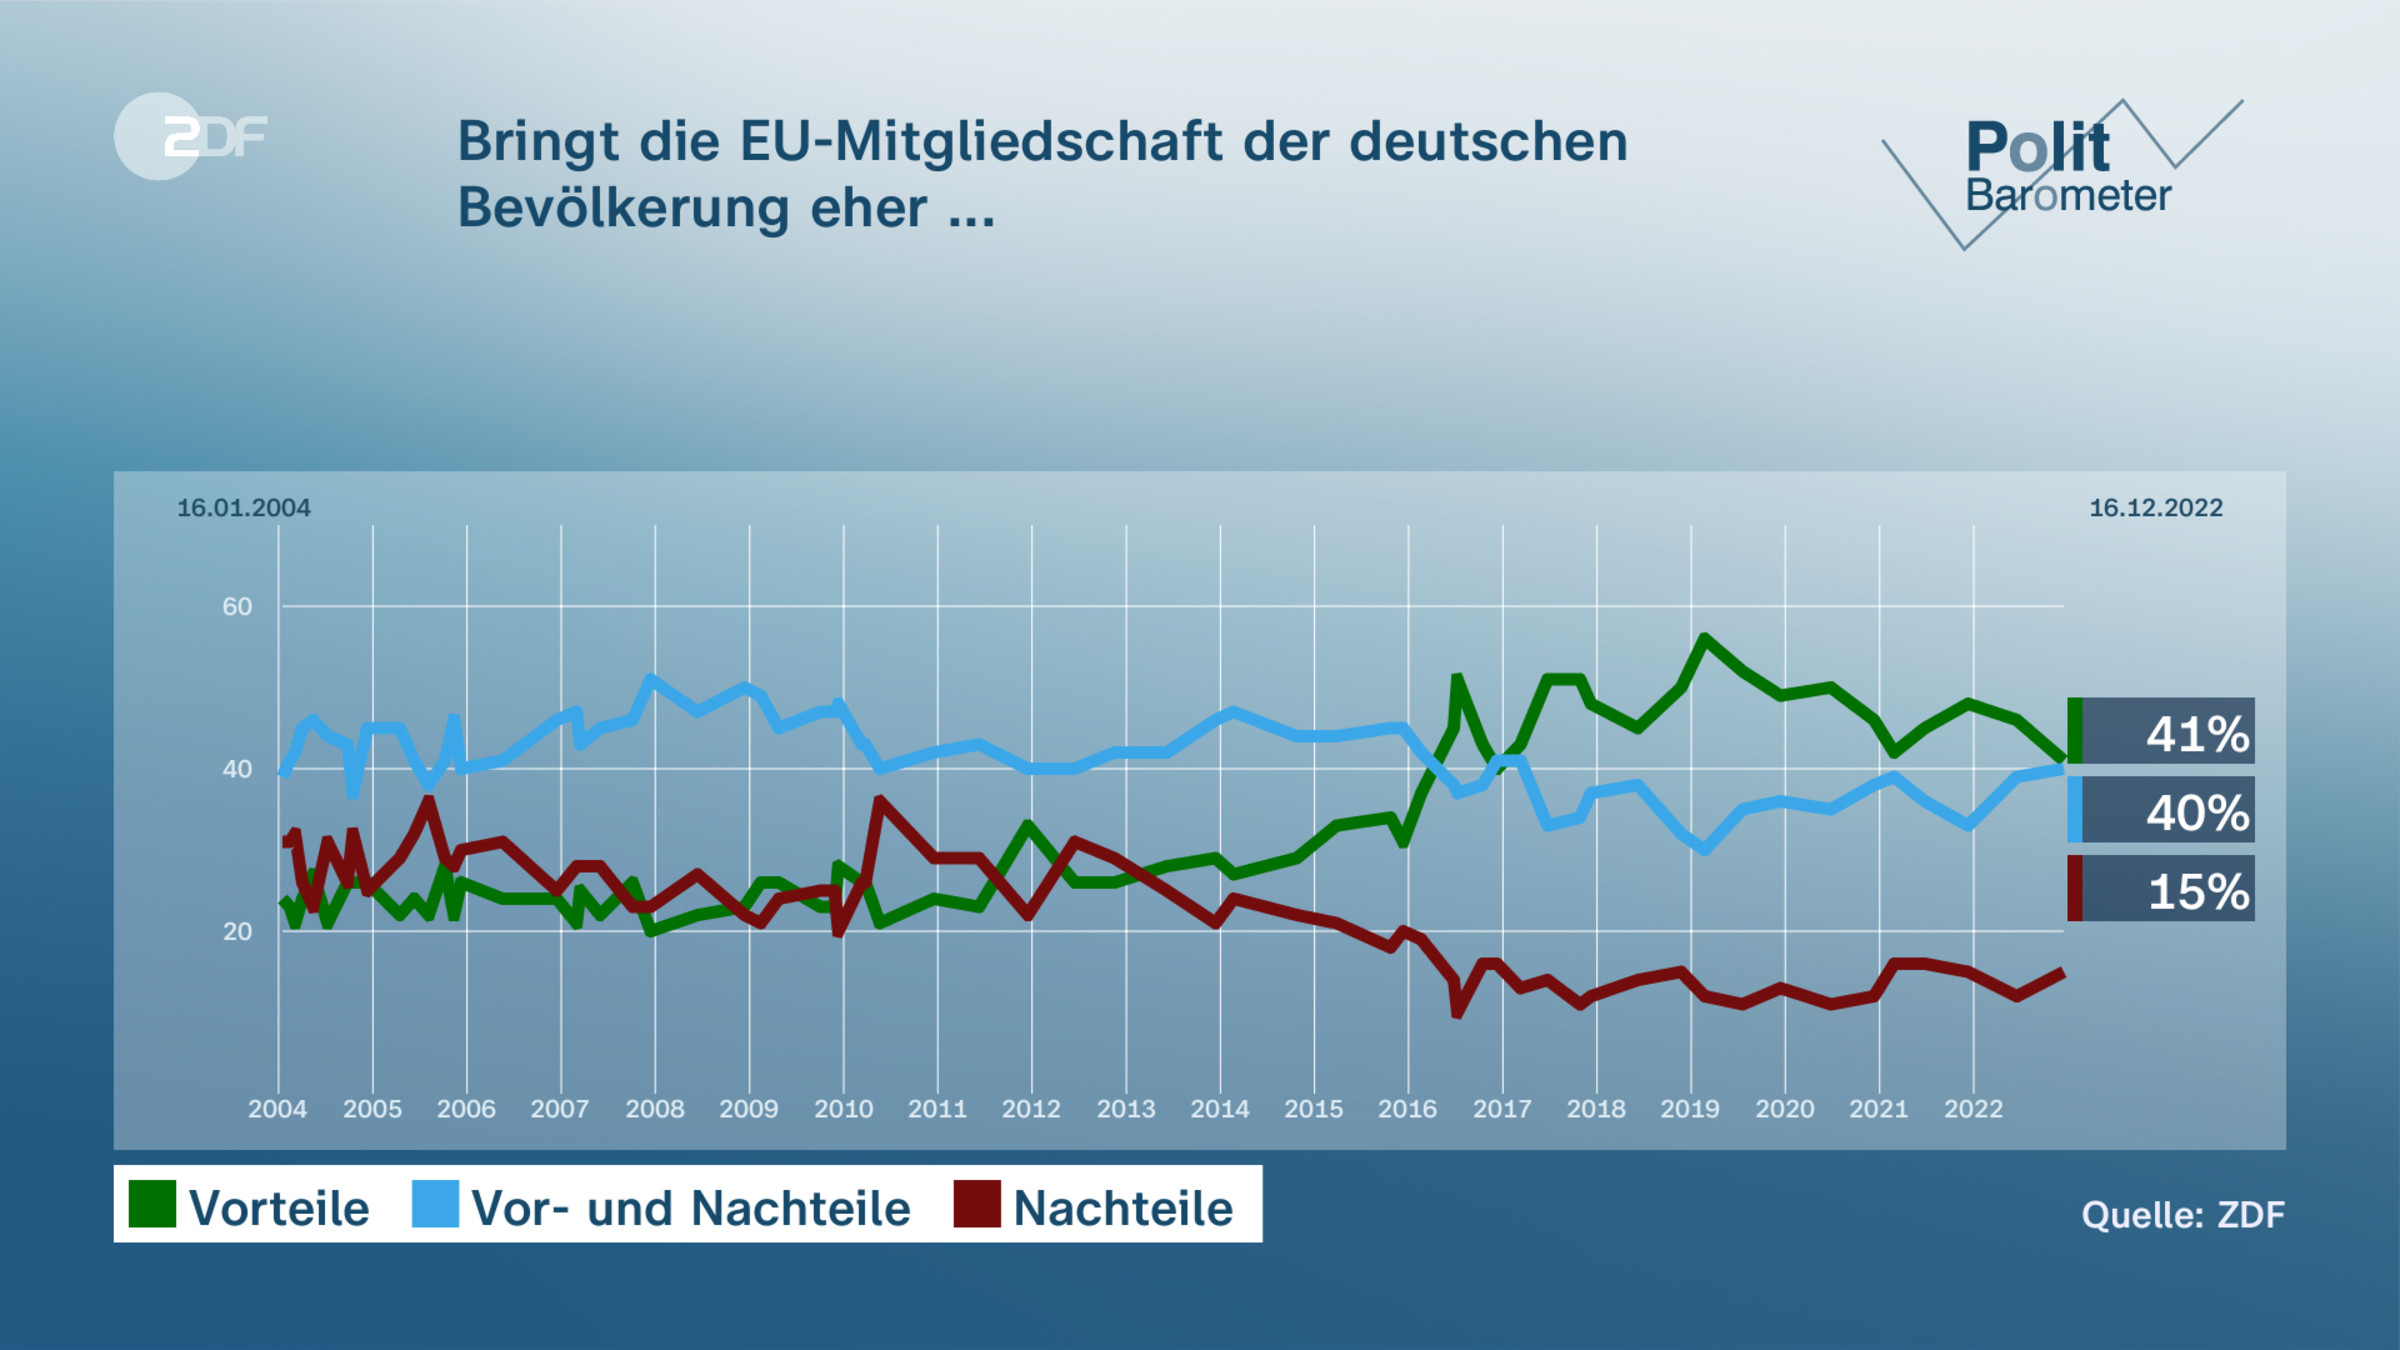 Bringt die EU-Mitgliedschaft der deutschen Bevölkerung eher ...